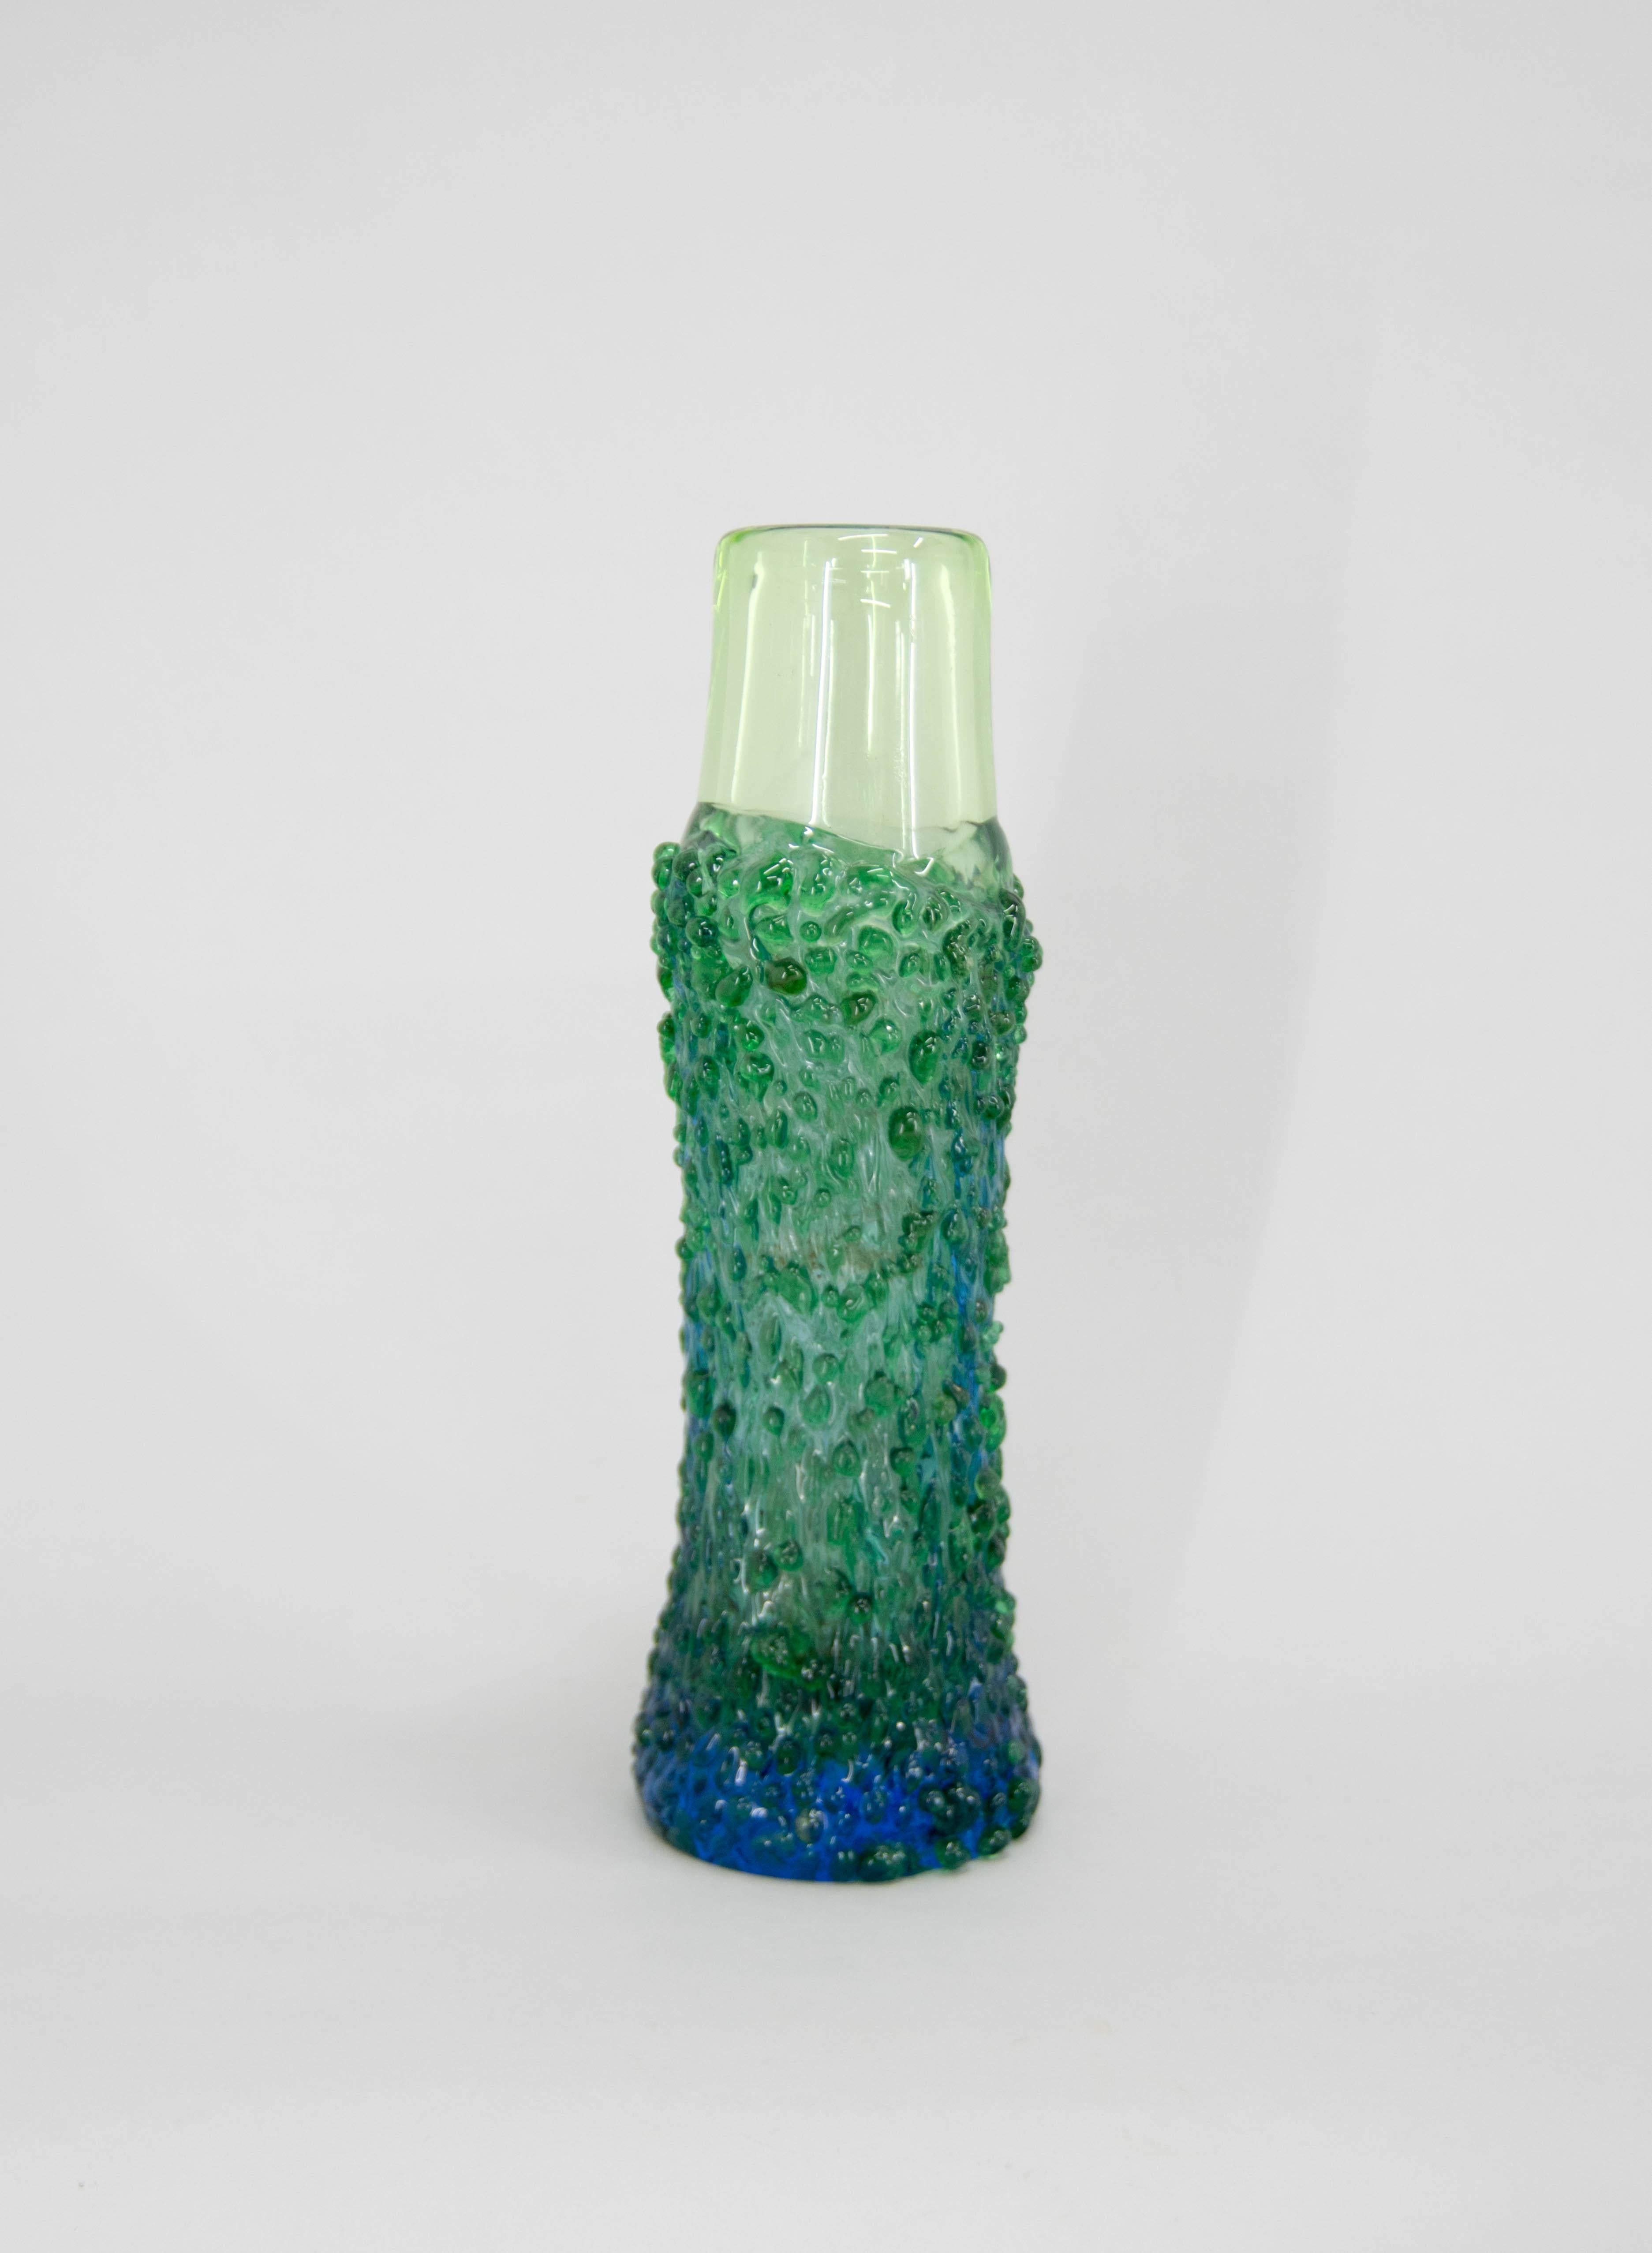 Art glass vase attributed to Miloslava Svobodova.
Perfect original condition.